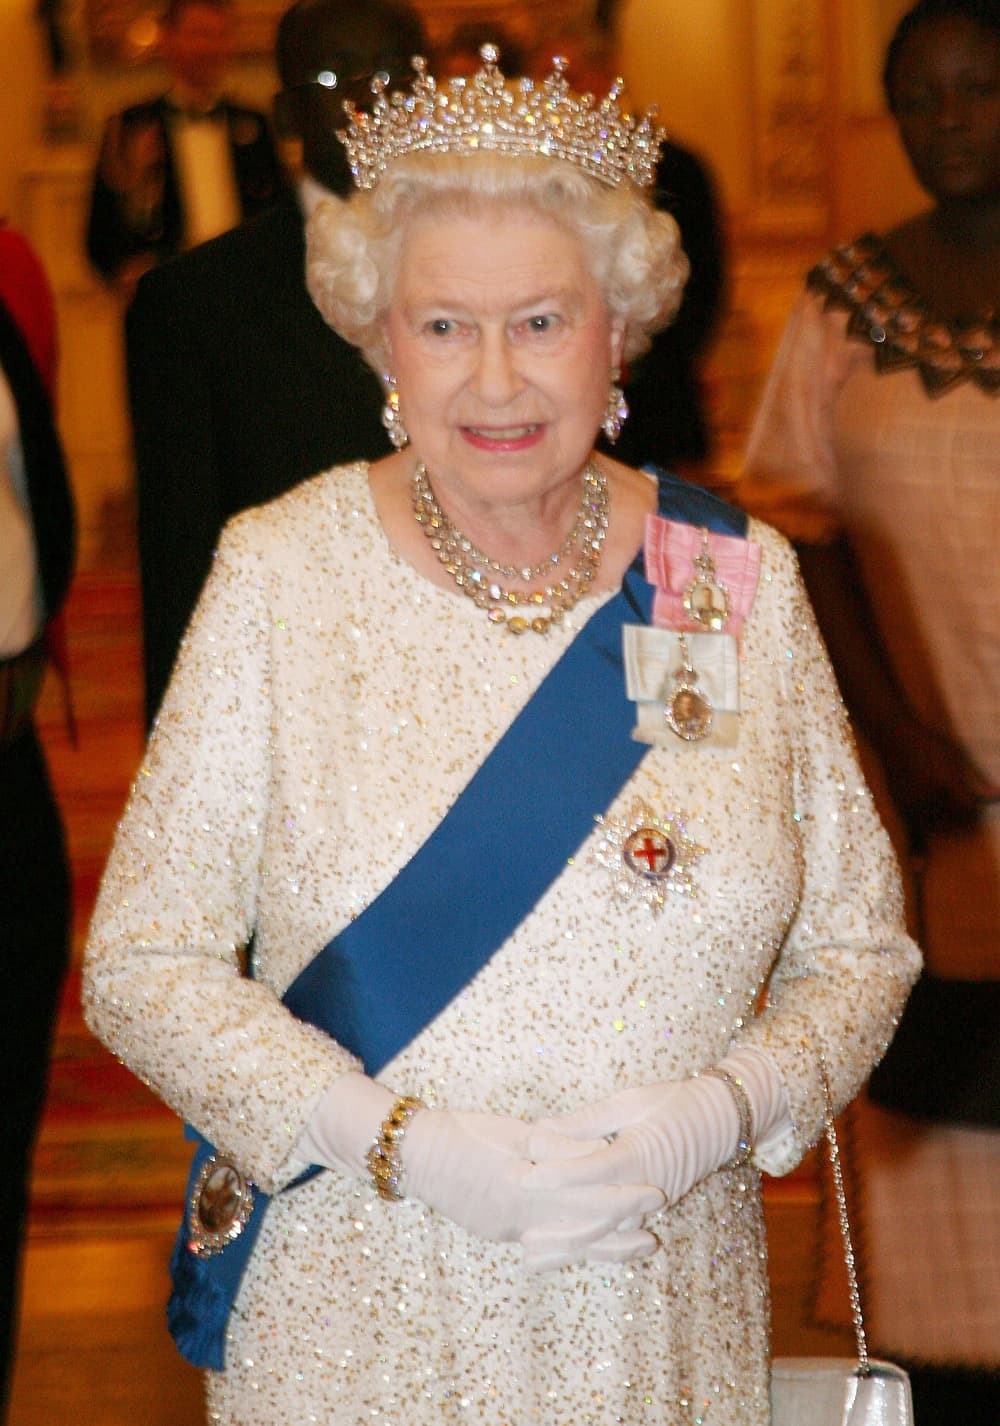 Nữ hoàng Elizabeth II, nữ vương trị vì lâu nhất của Anh, qua đời ở tuổi 96 - Ảnh 1